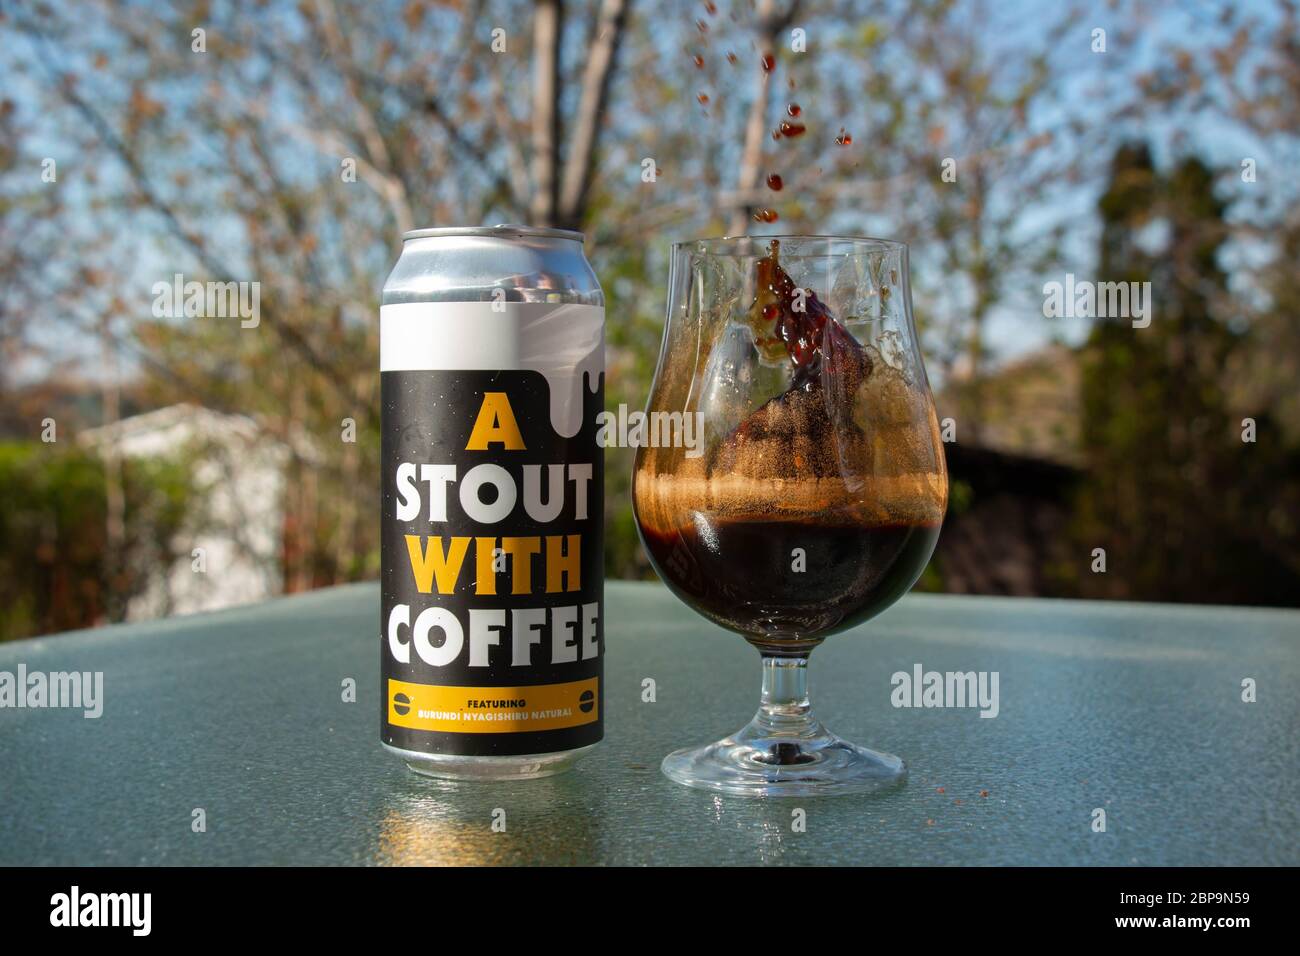 Kaffee stout -Fotos und -Bildmaterial in hoher Auflösung – Alamy